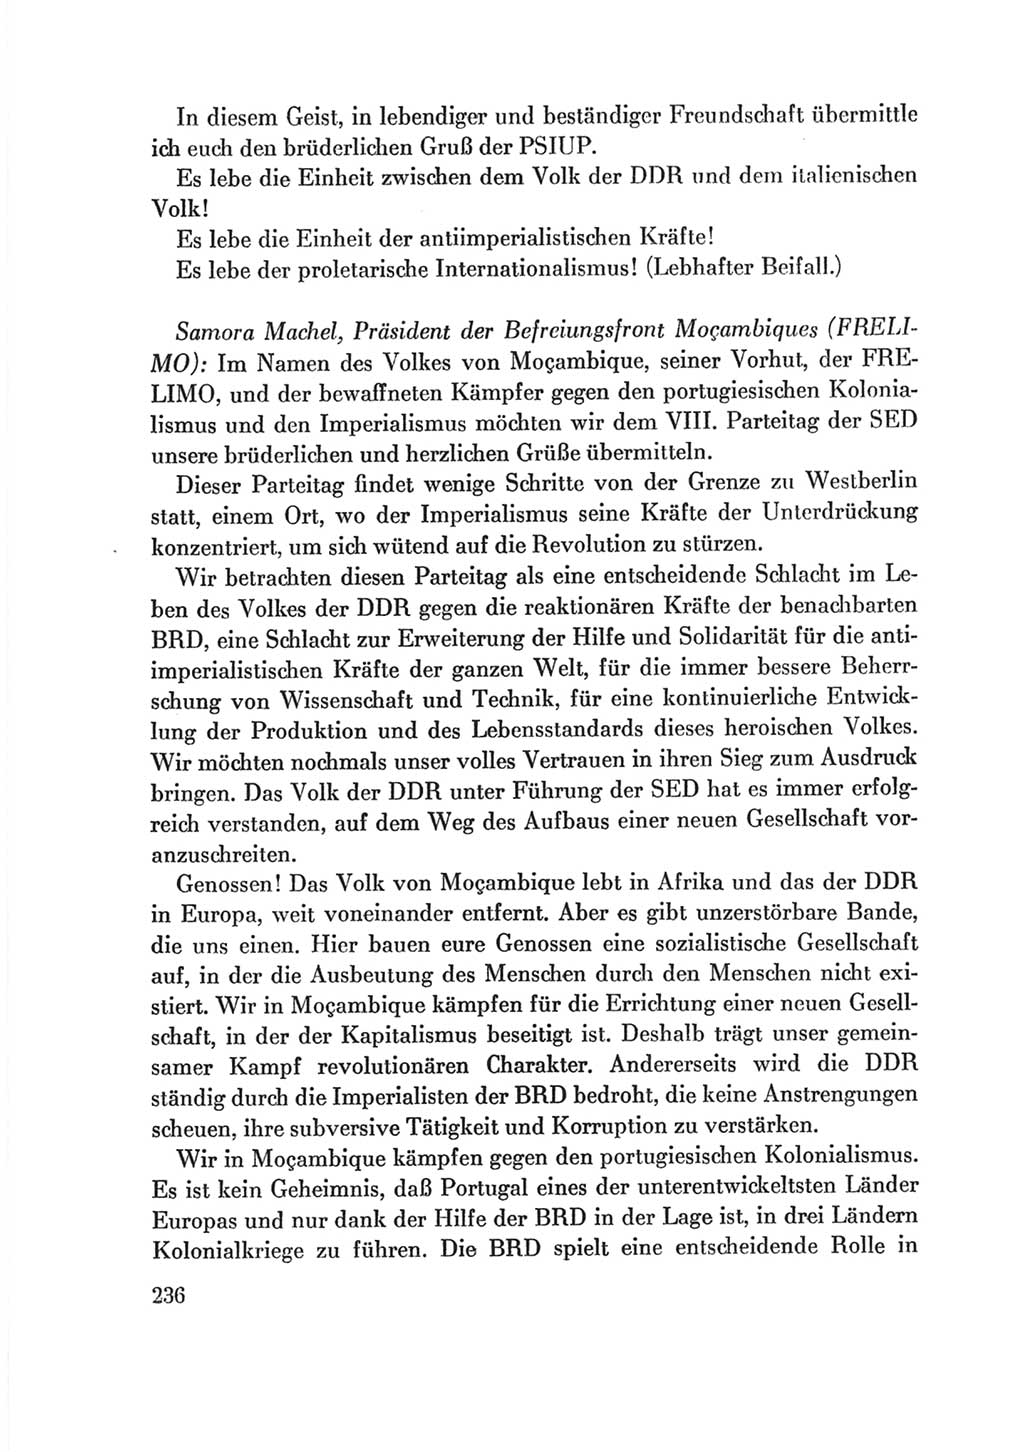 Protokoll der Verhandlungen des Ⅷ. Parteitages der Sozialistischen Einheitspartei Deutschlands (SED) [Deutsche Demokratische Republik (DDR)] 1971, Band 2, Seite 236 (Prot. Verh. Ⅷ. PT SED DDR 1971, Bd. 2, S. 236)